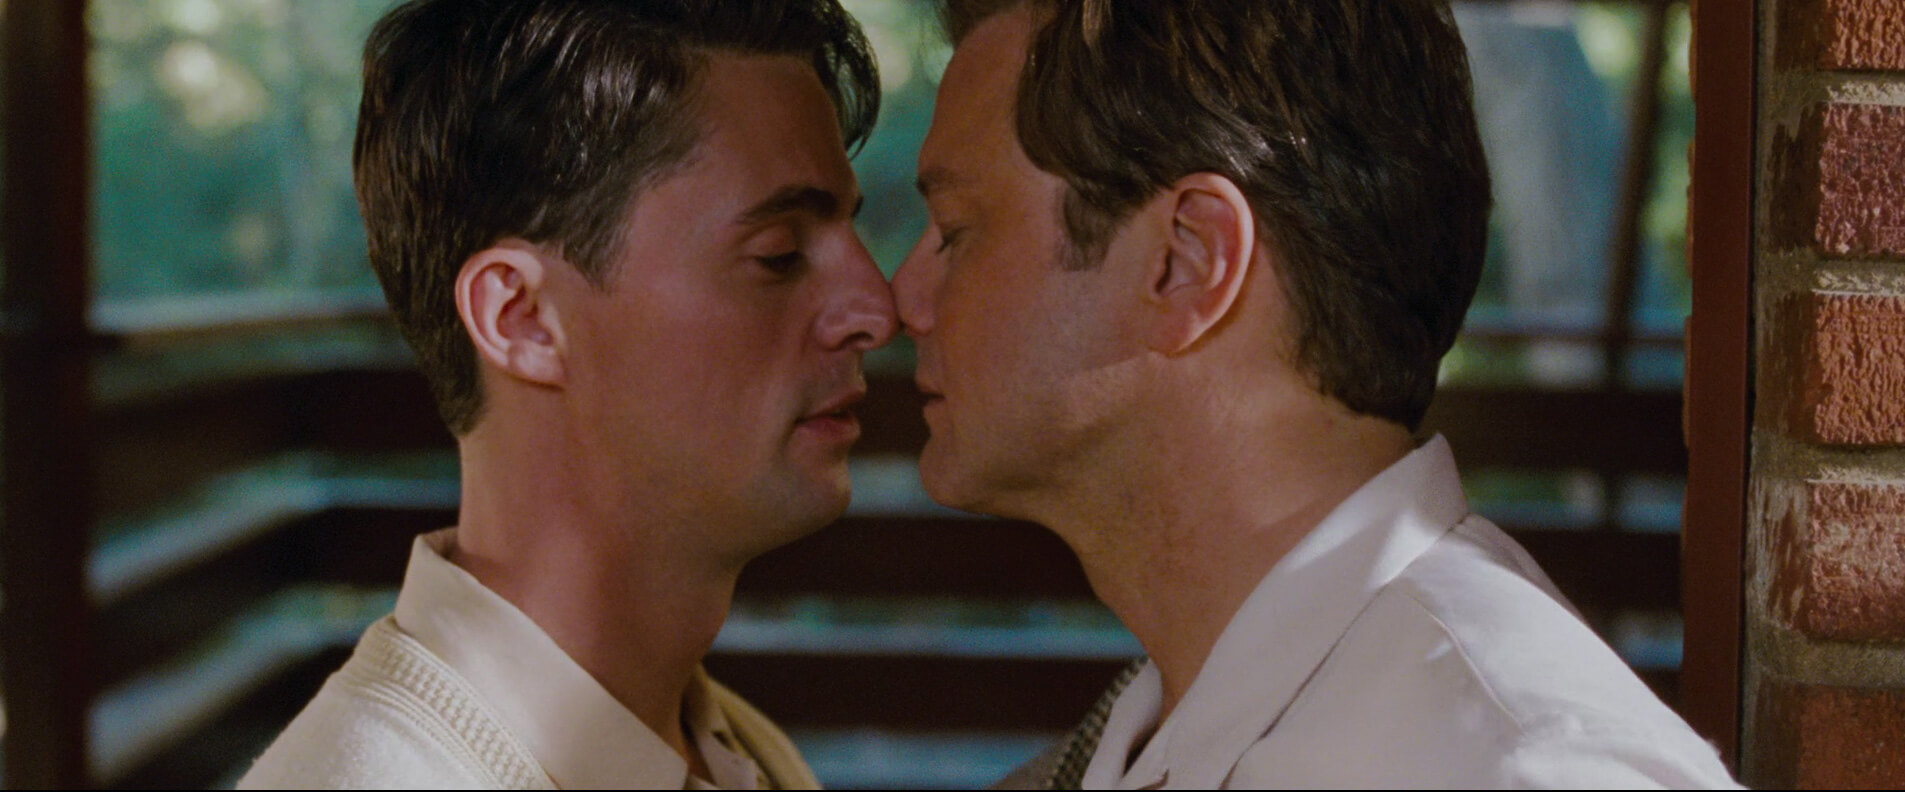 Rupert Everett: "Bisogna chiedersi perché ad Hollywood gli attori gay non possano interpretare ruoli etero" - a single man kiss - Gay.it